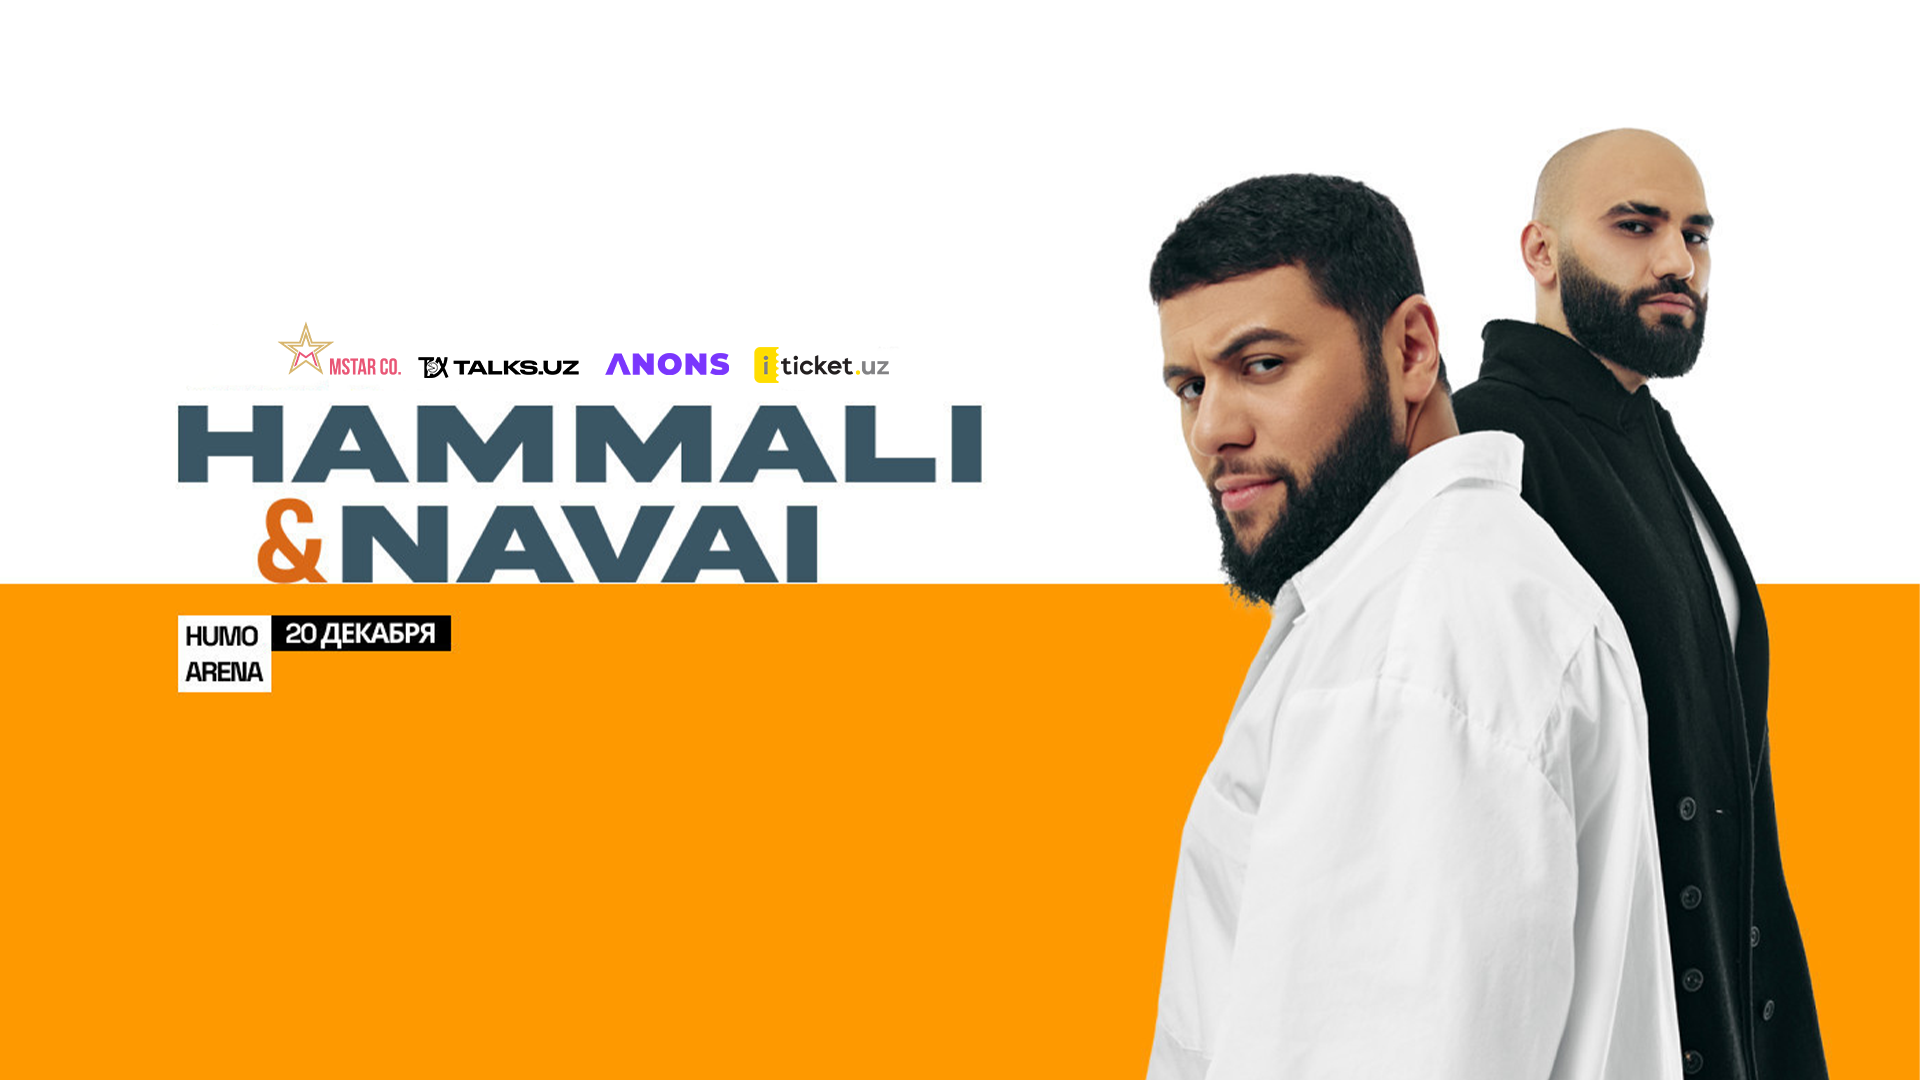 Успейте приобрести билеты на концерт Hammali & Navai по скидочным ценам